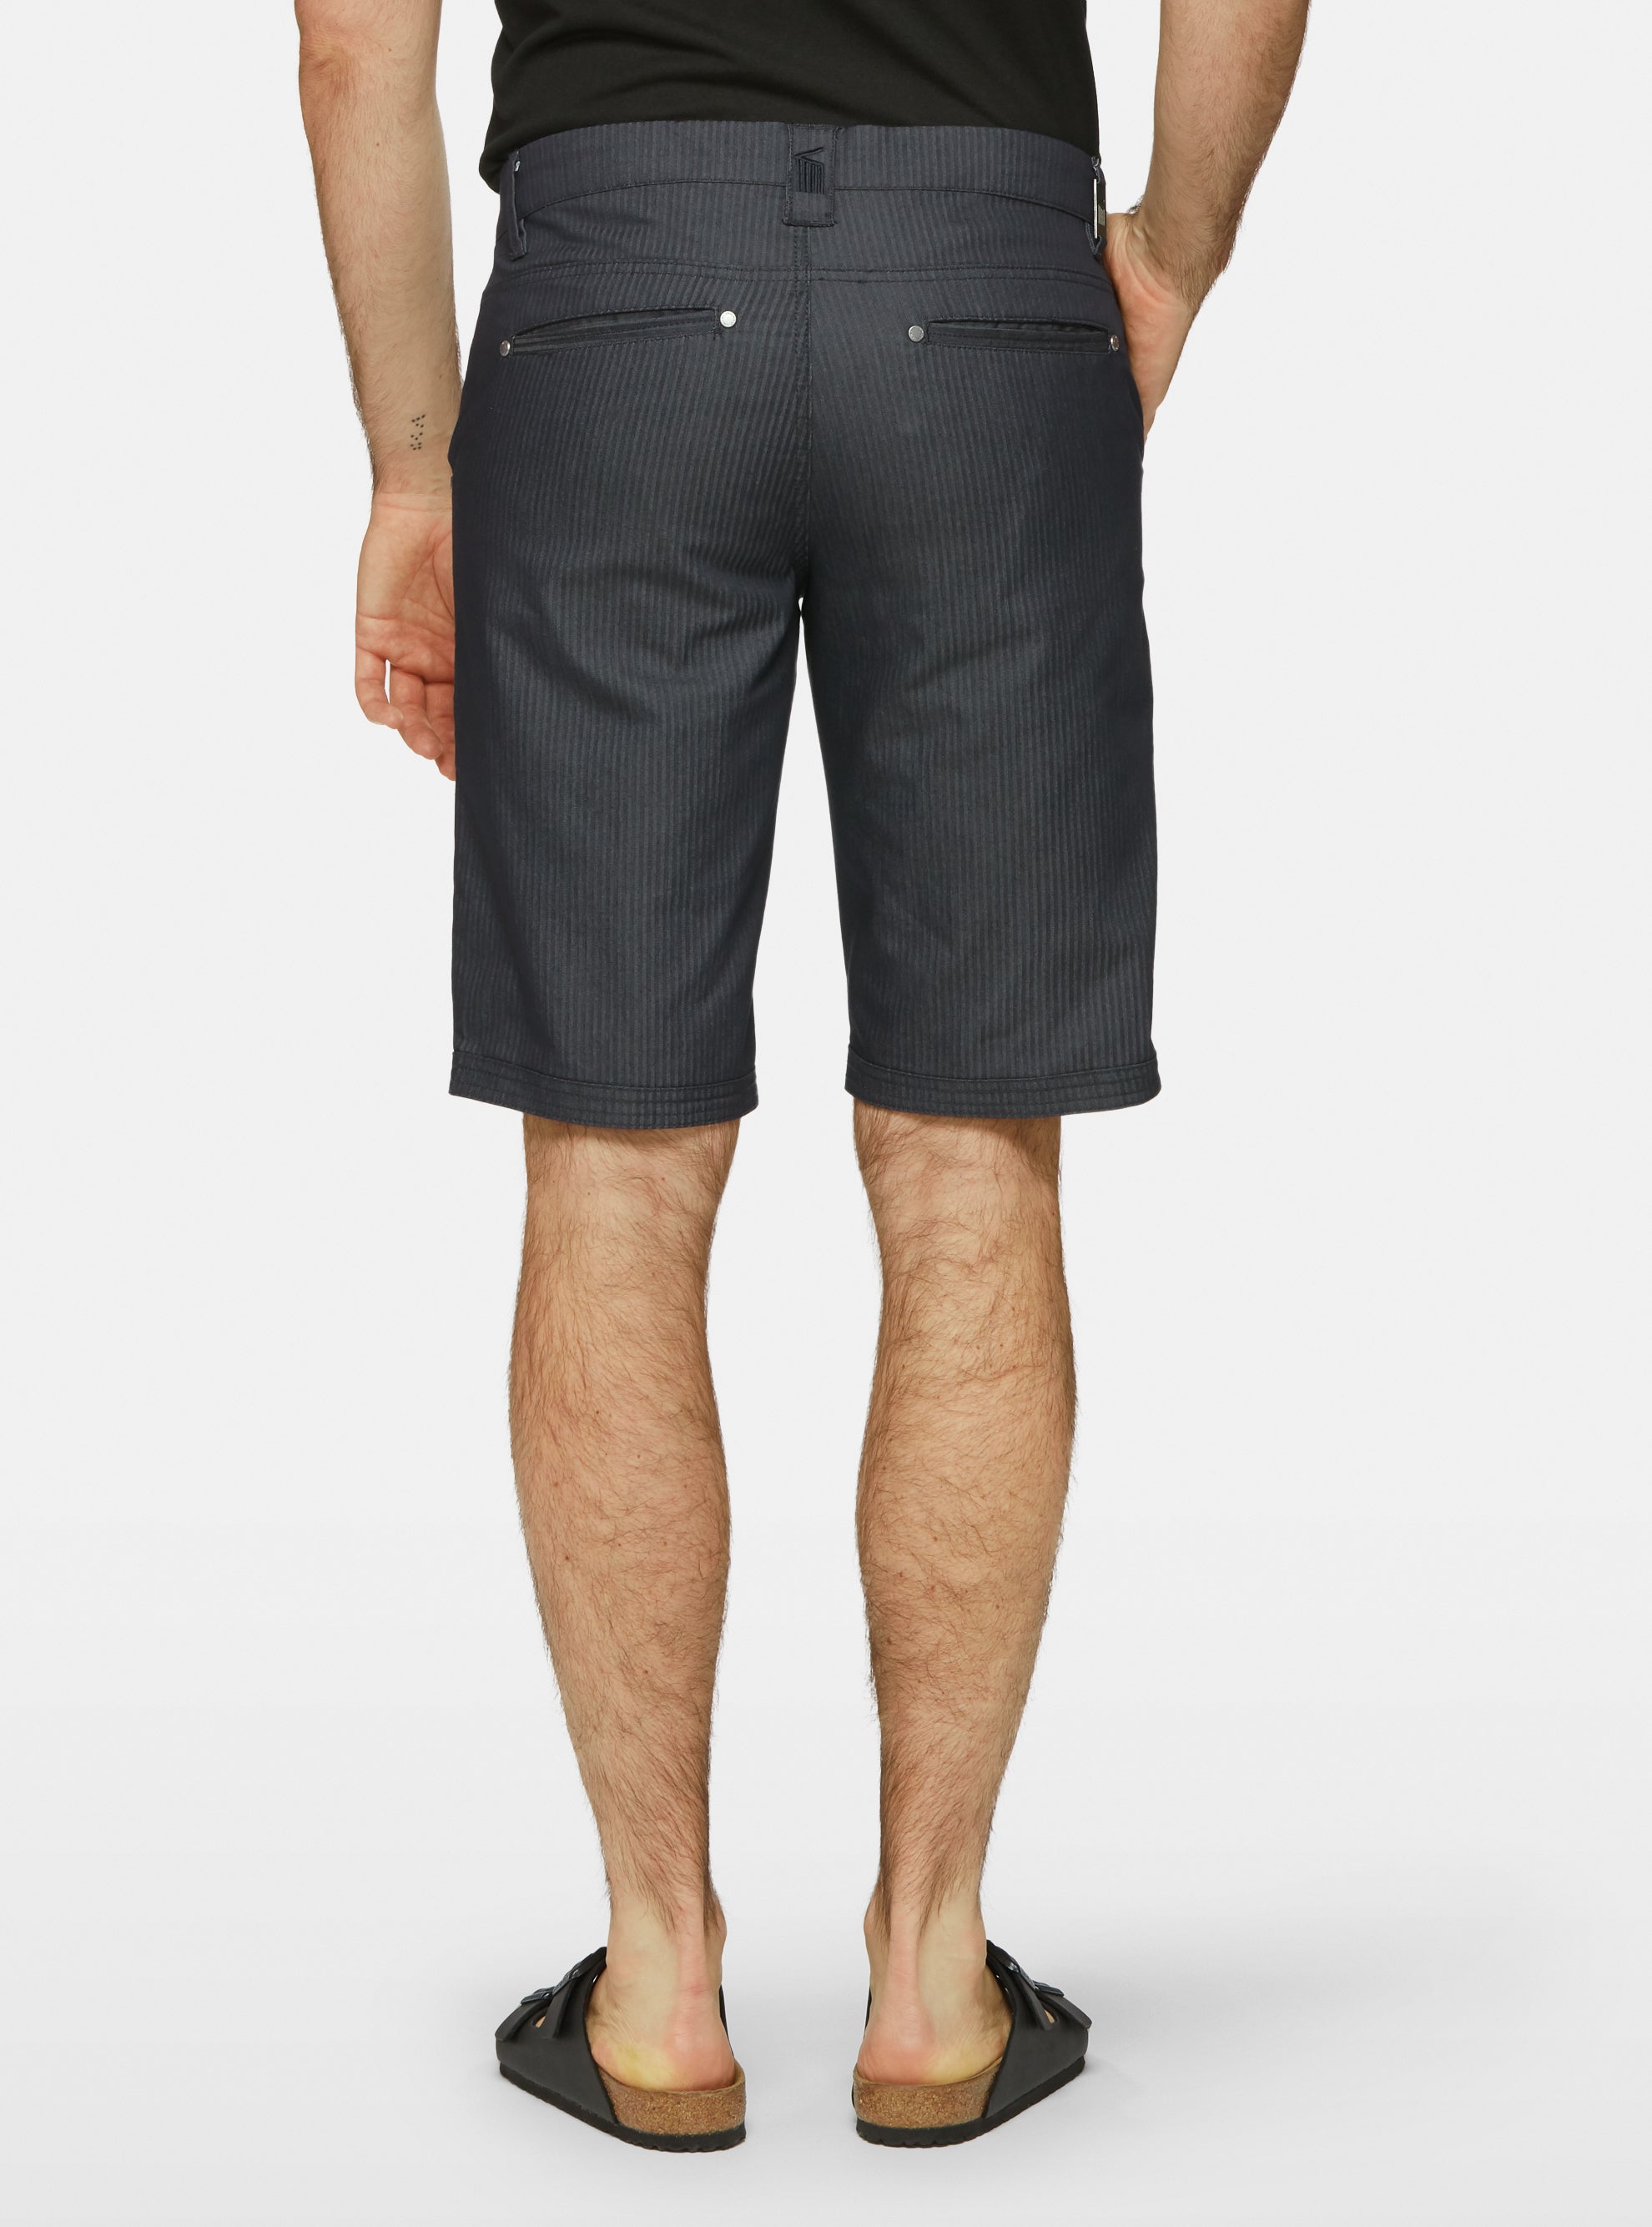 Navy herringbone Bermuda shorts